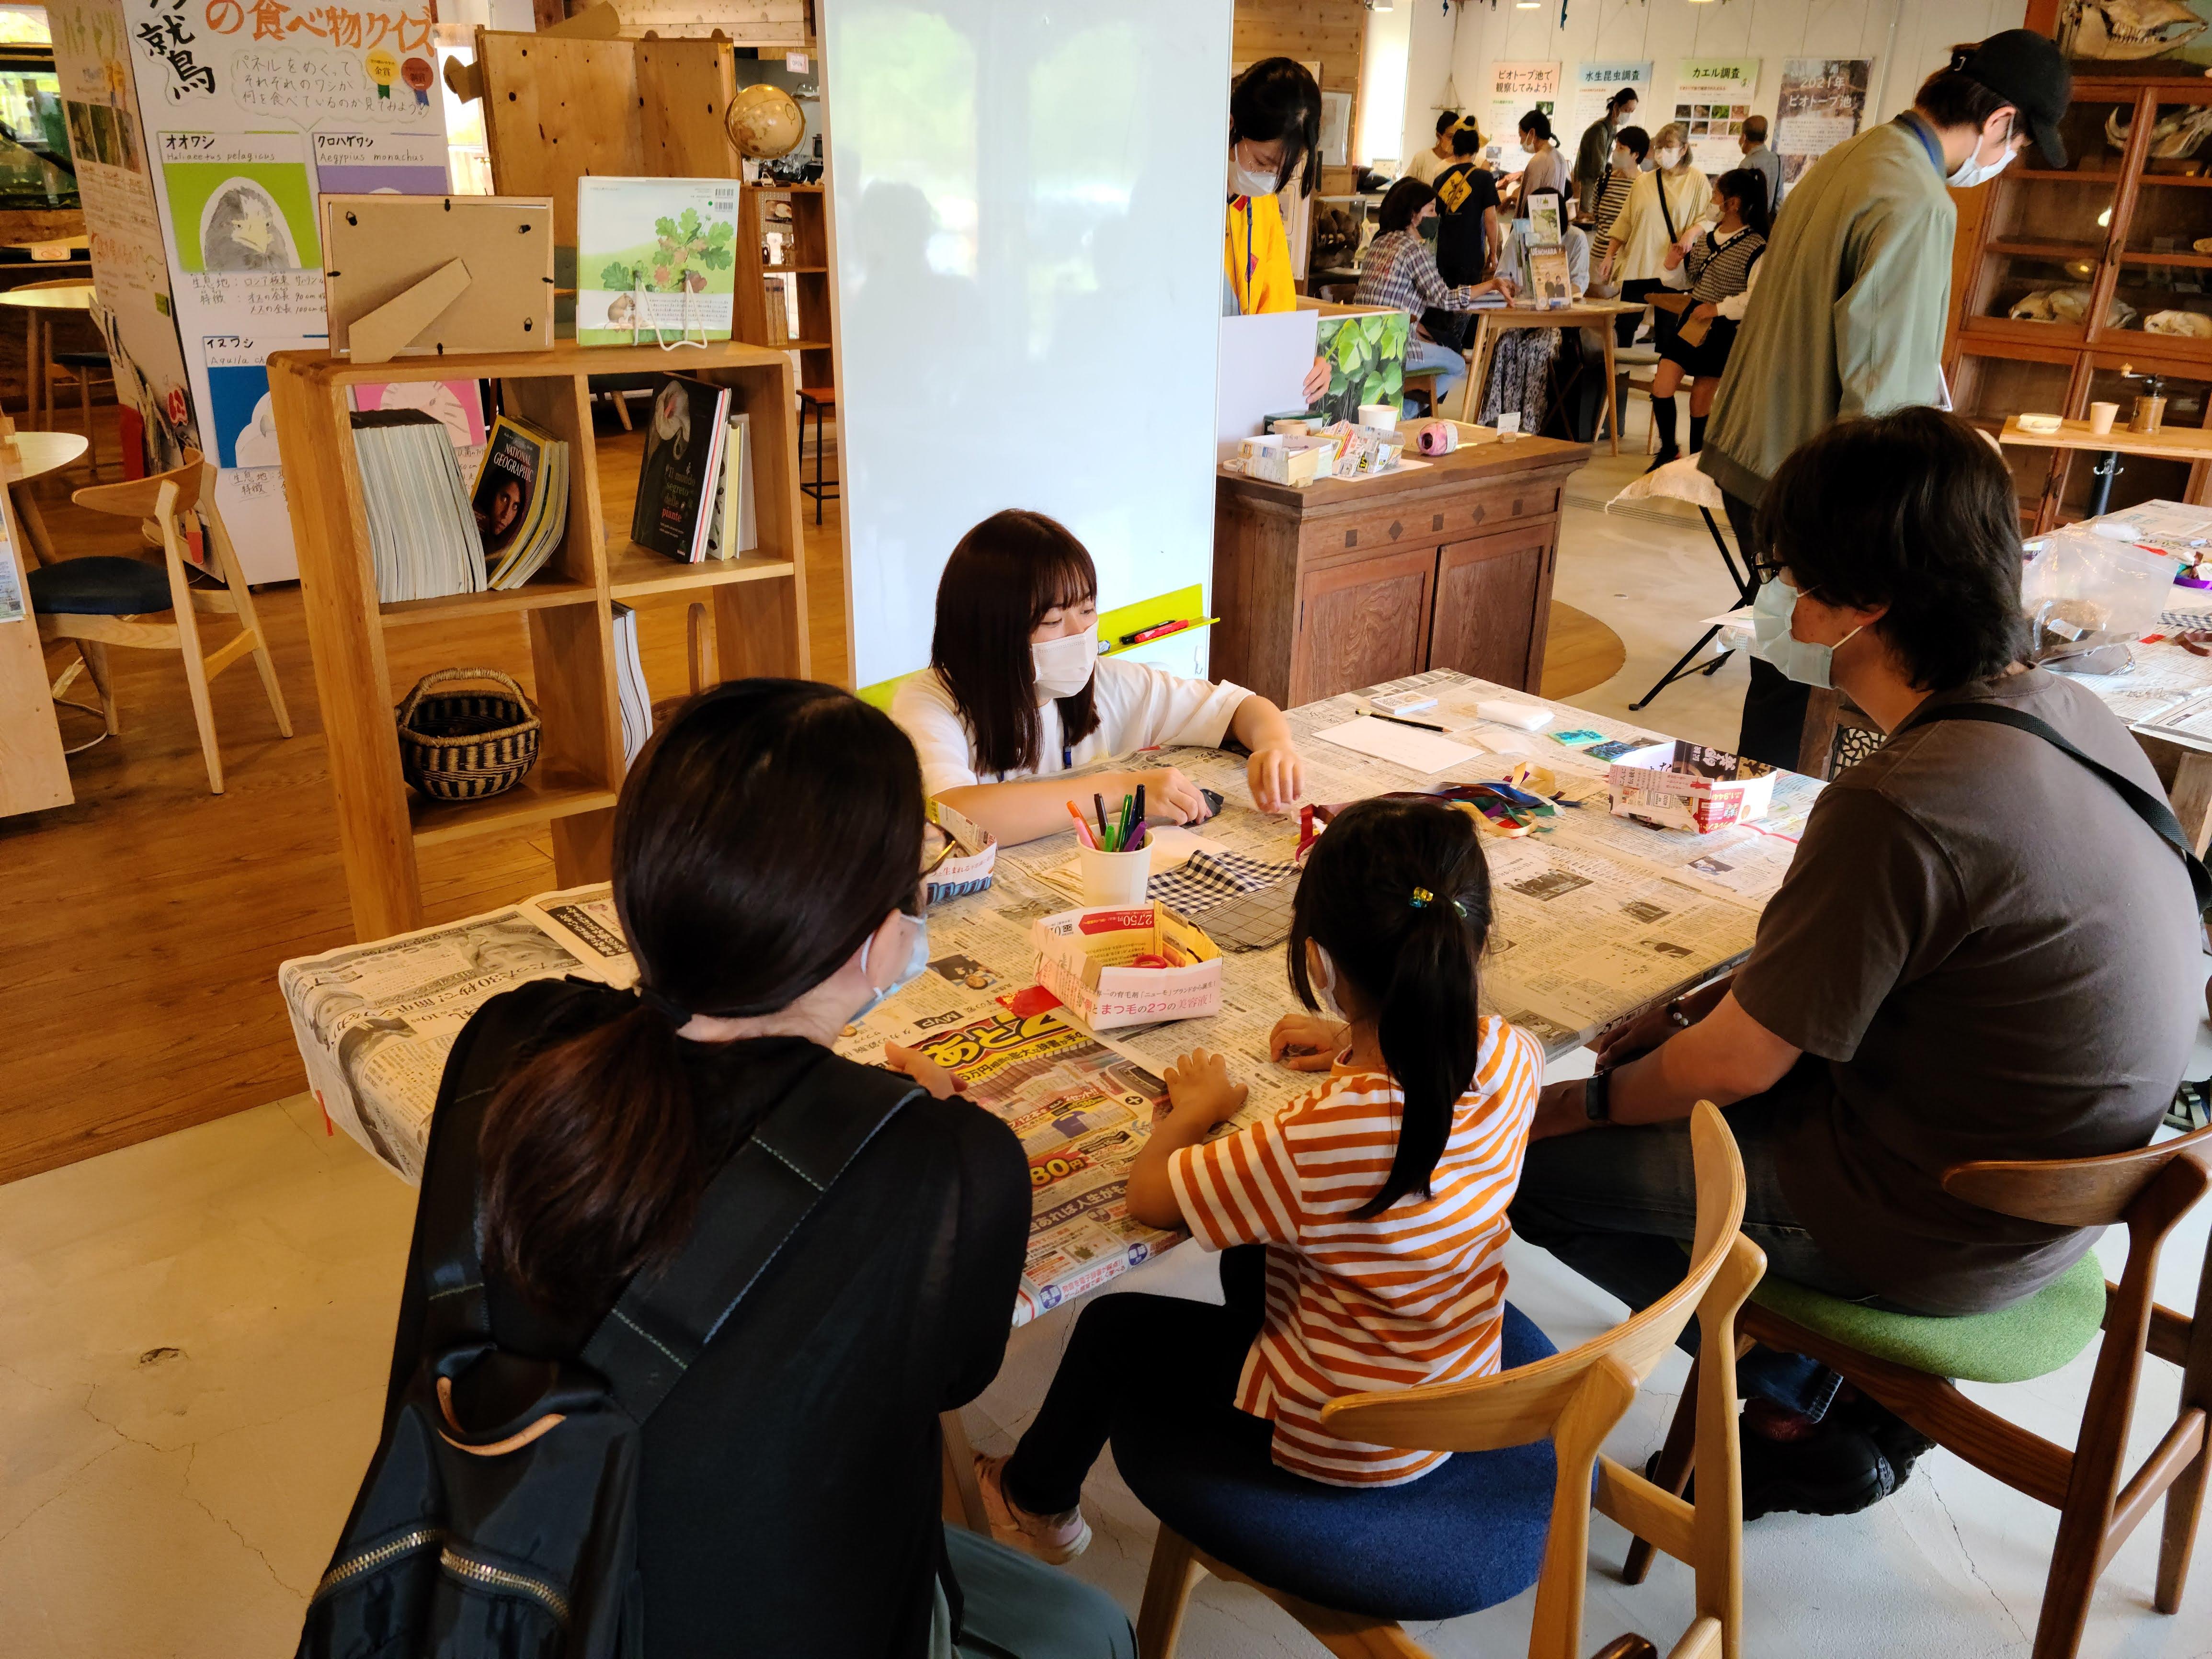 帝京科学大学で地域連携イベント「まちの上の朝市」を開催